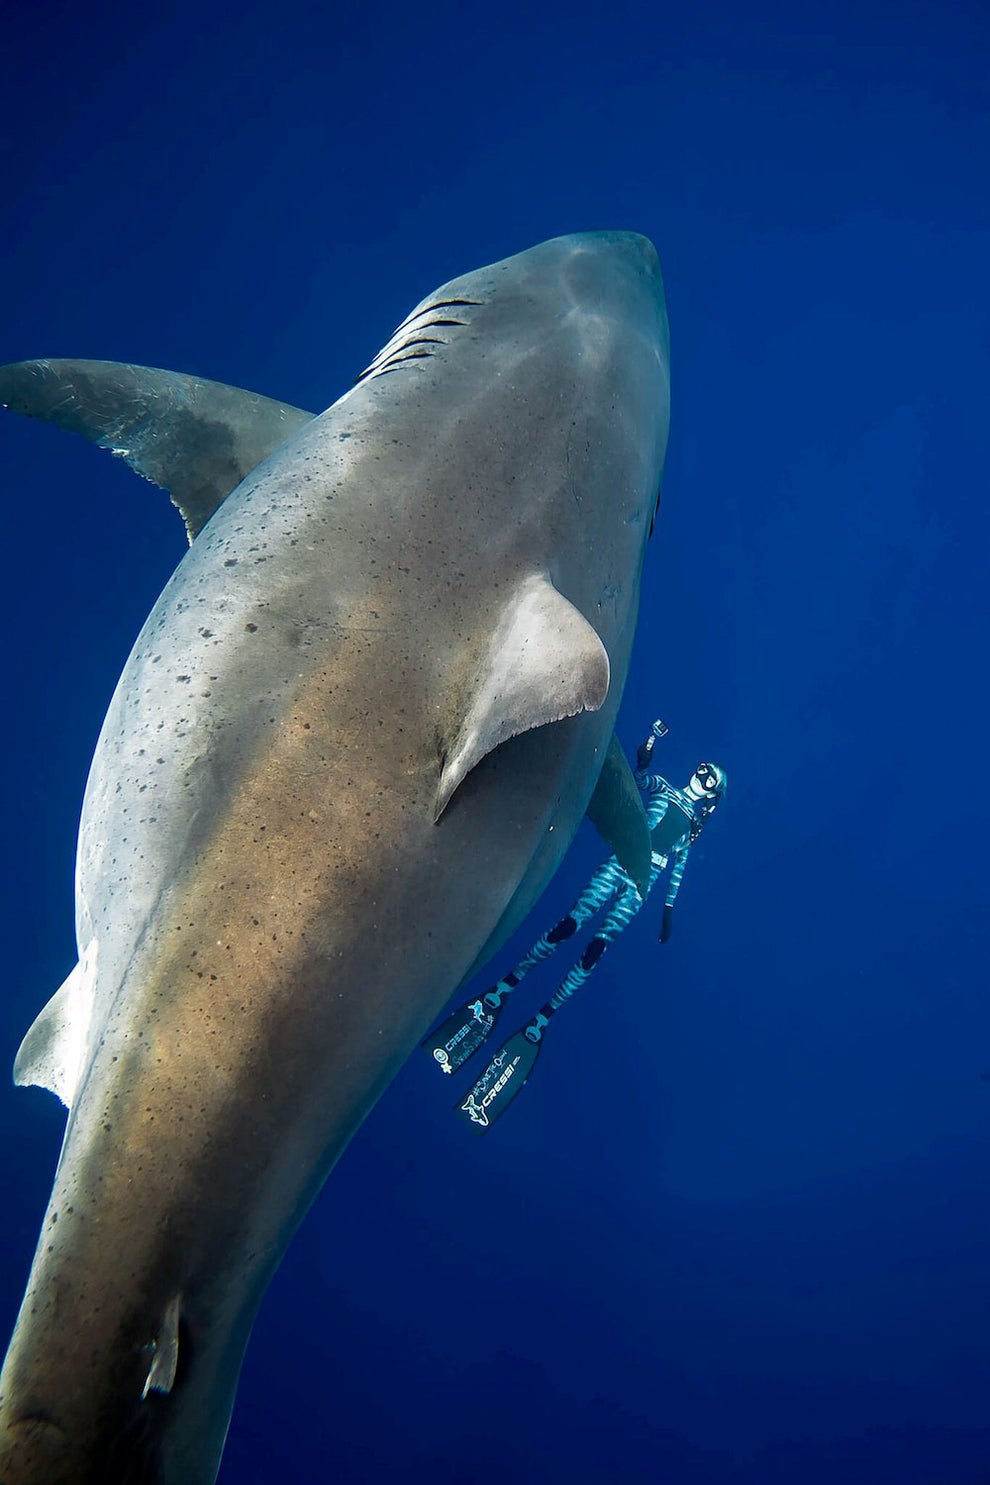 ホオジロザメと一緒に泳いだダイバーたちが撮った貴重な映像